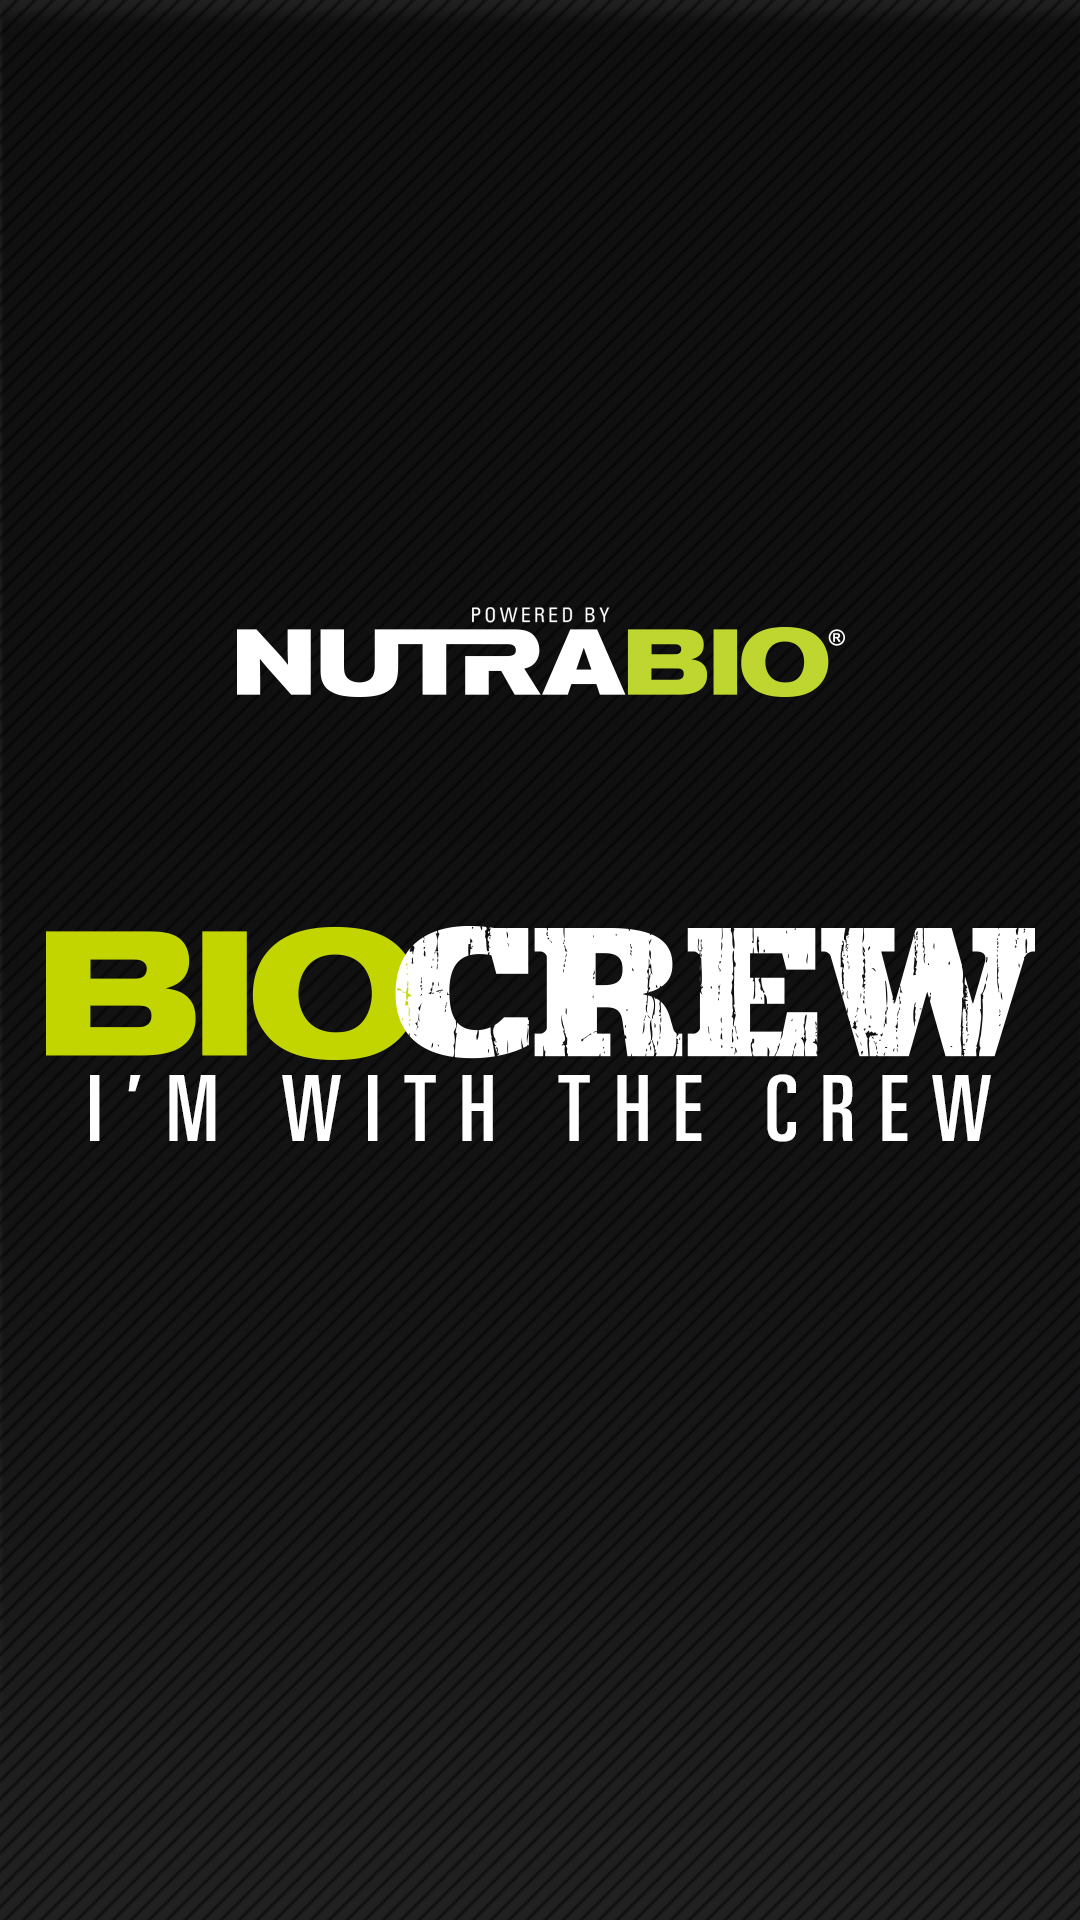 NutraBio BioCrew Instagram Story Image